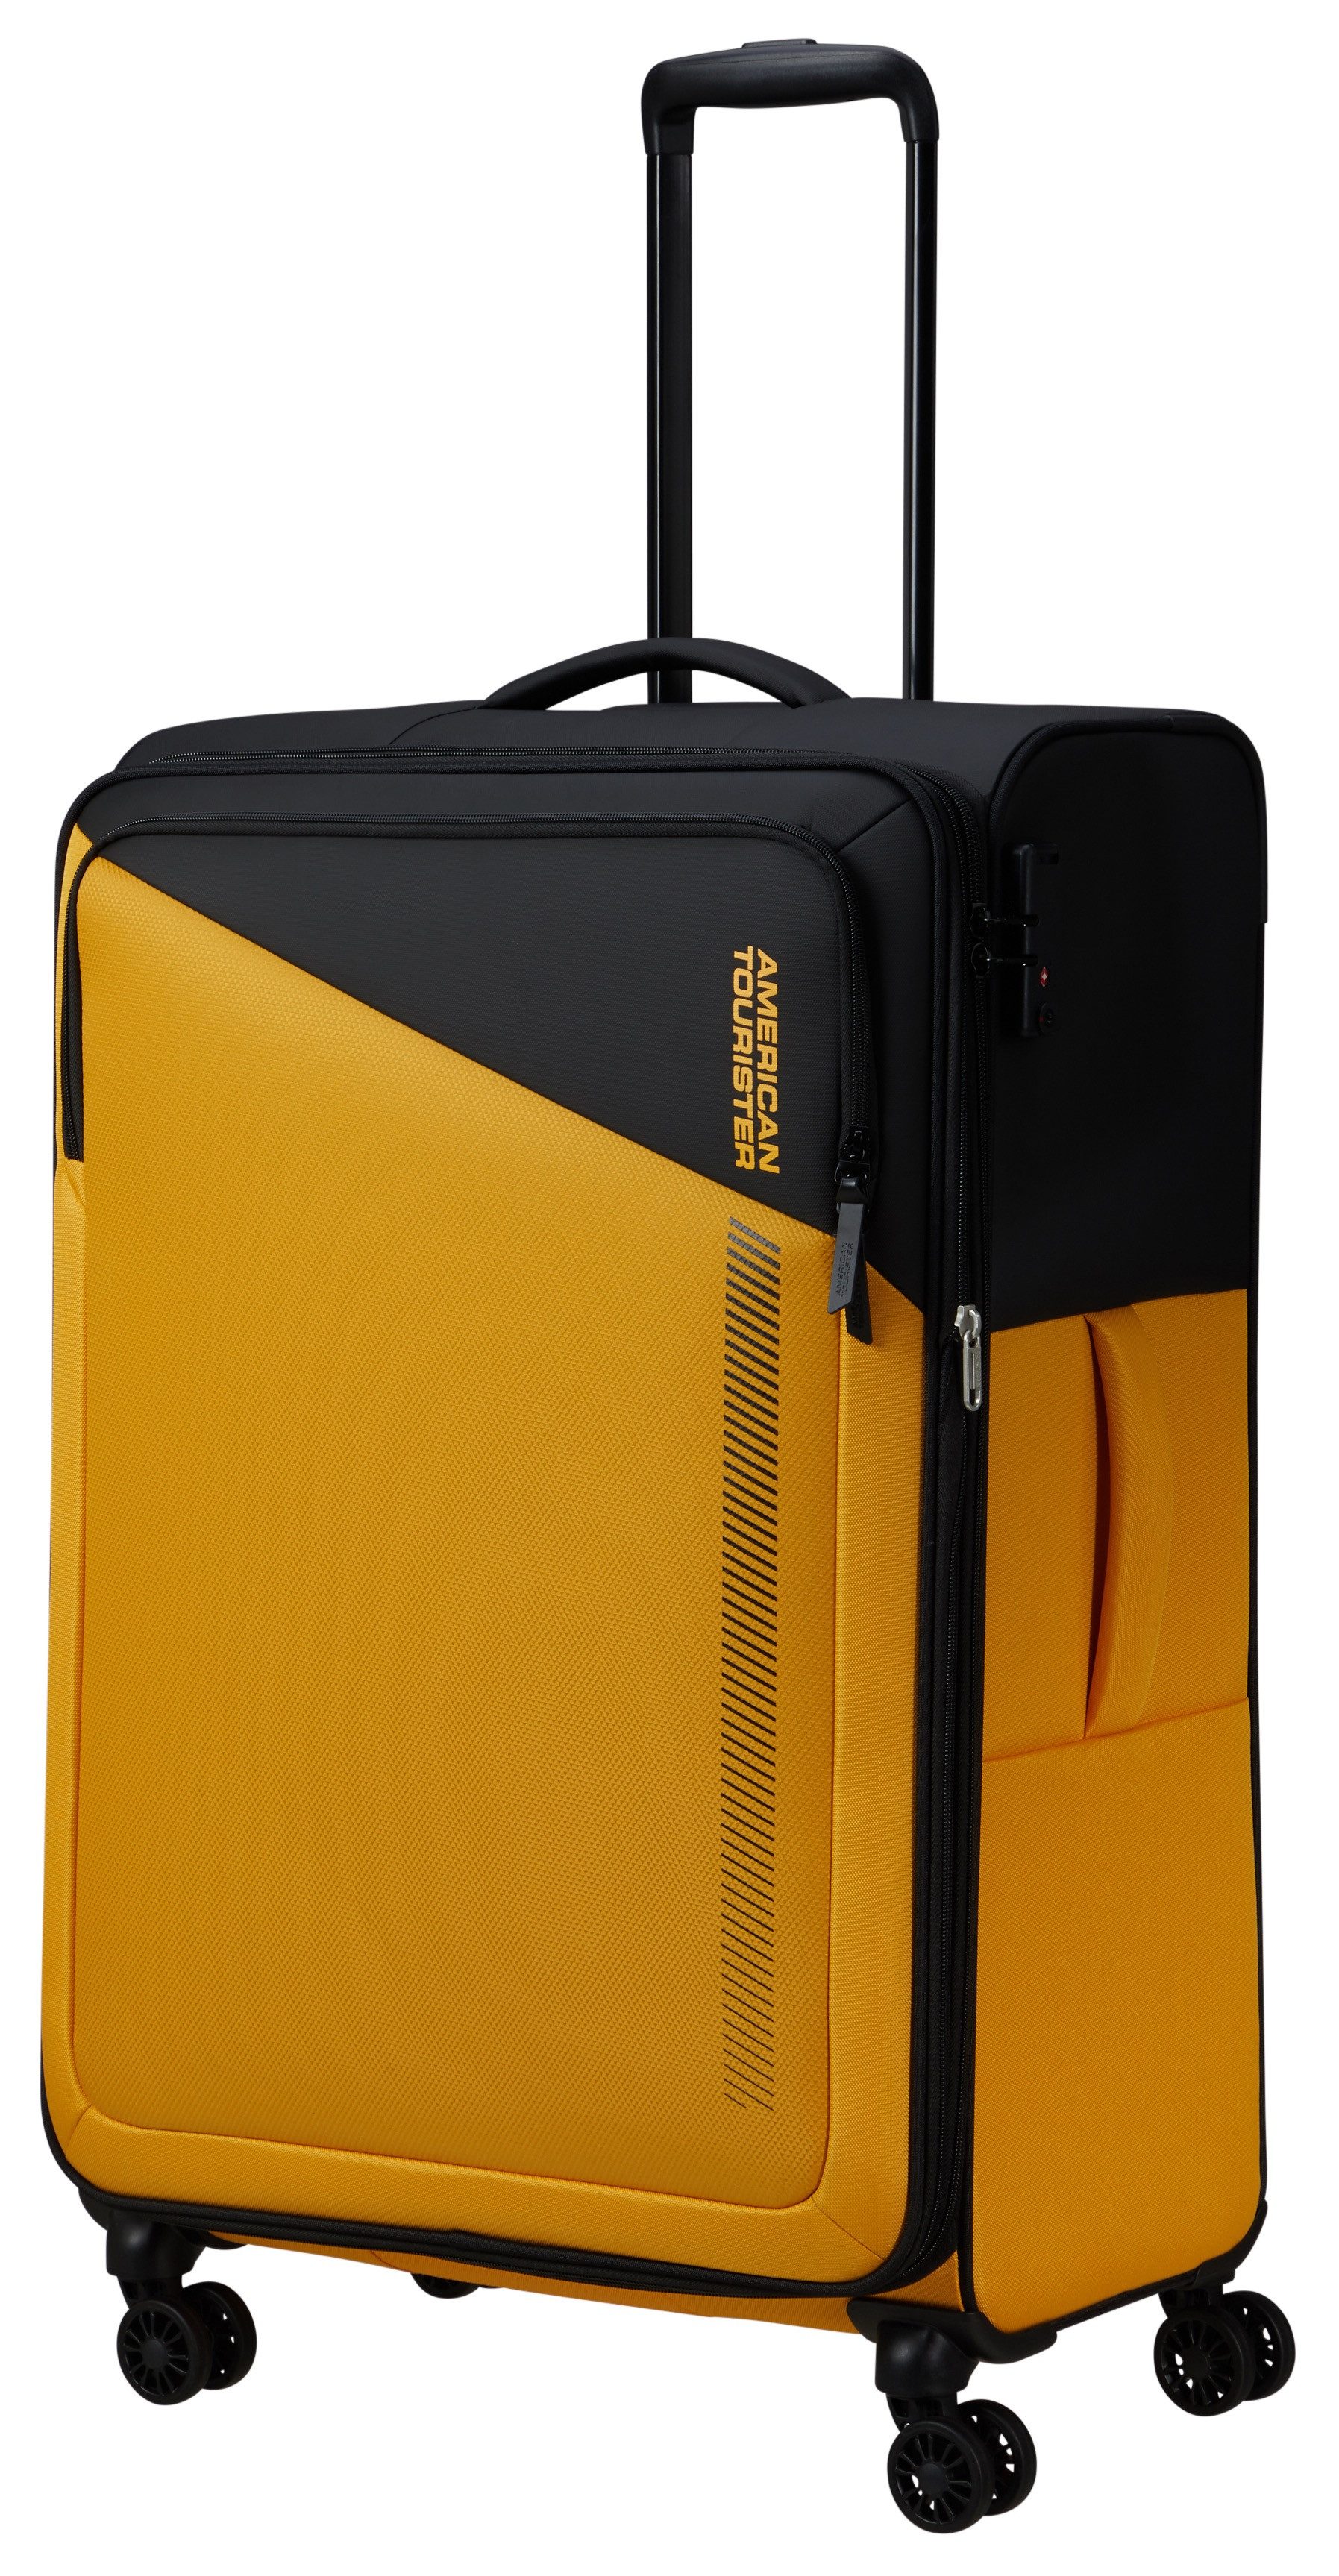 American Tourister® Weichgepäck-Trolley DARING DASH Spinner L 77, 4 Rollen, Koffer Reisegepäck Reisekoffer Koffer groß Fronttasche